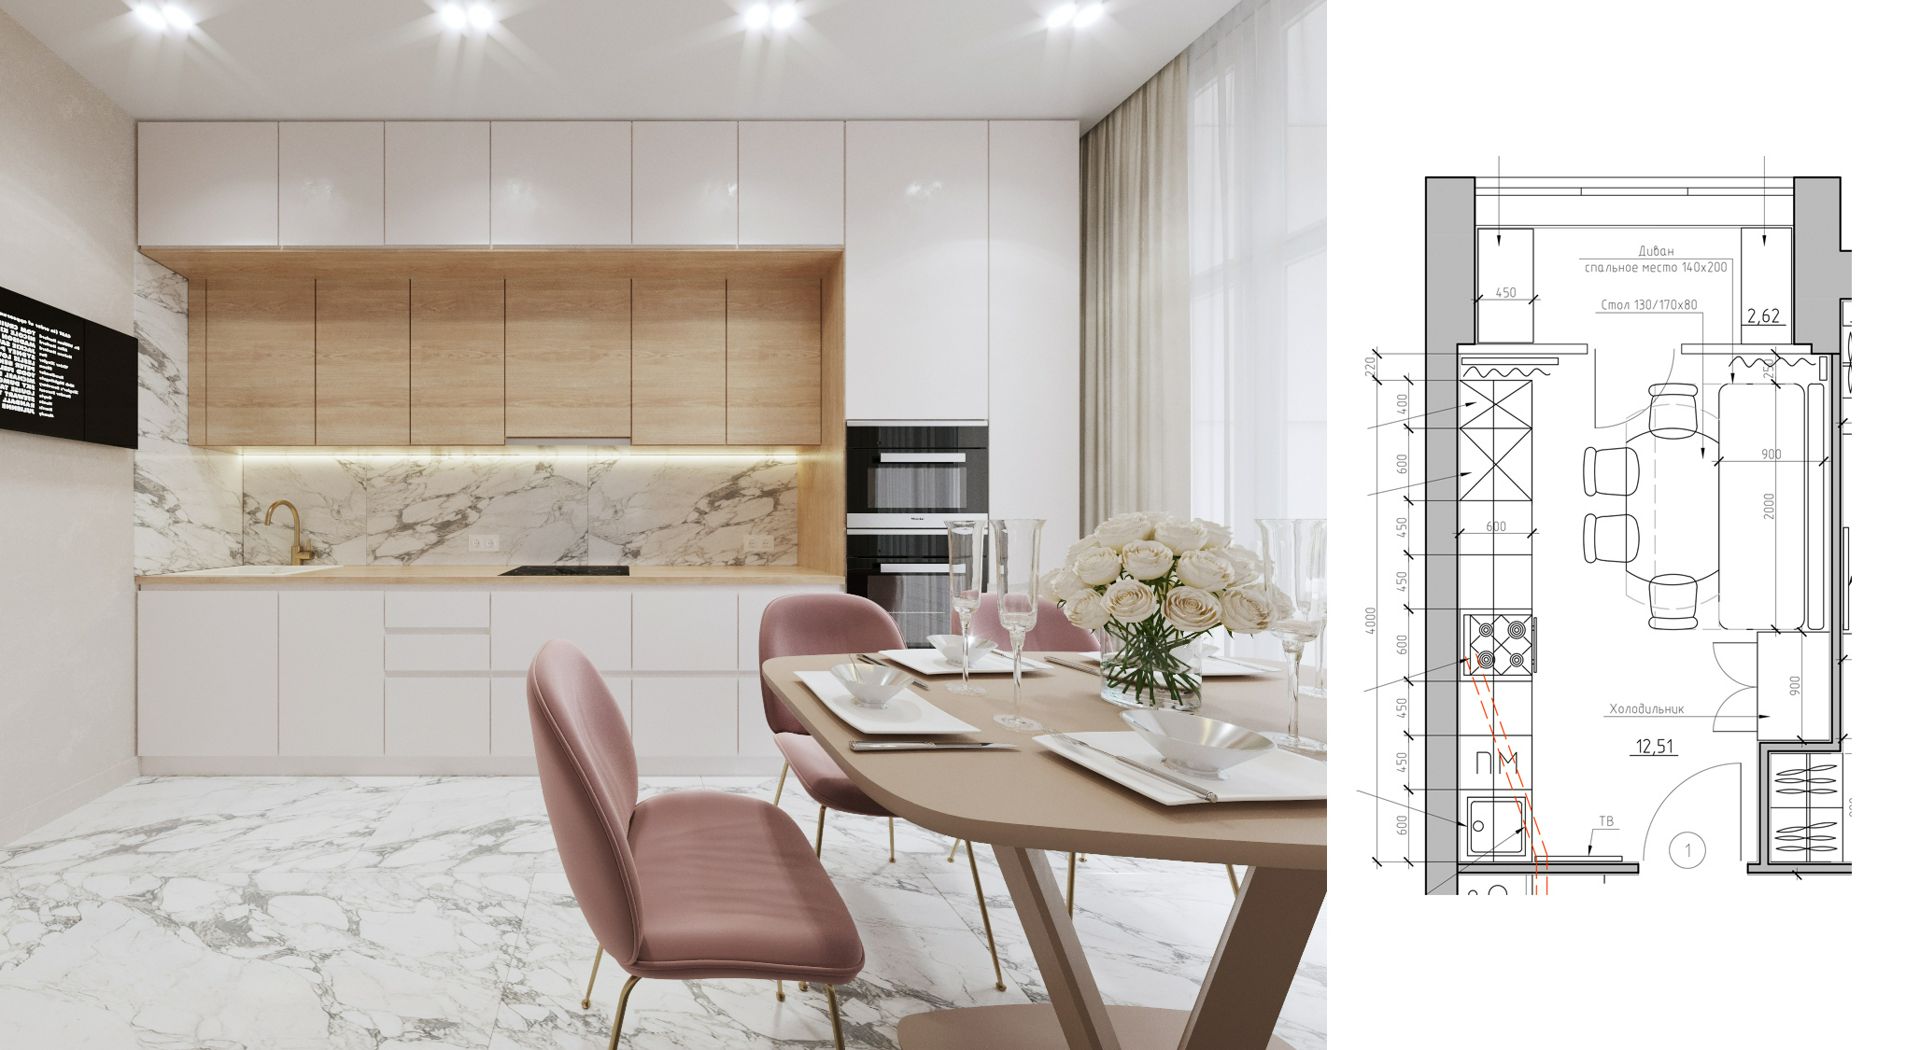 Готовая сцена 3D модель дизайн интерьера гостиной кухни коттеджа квартиры дома 3D max/Corona Render